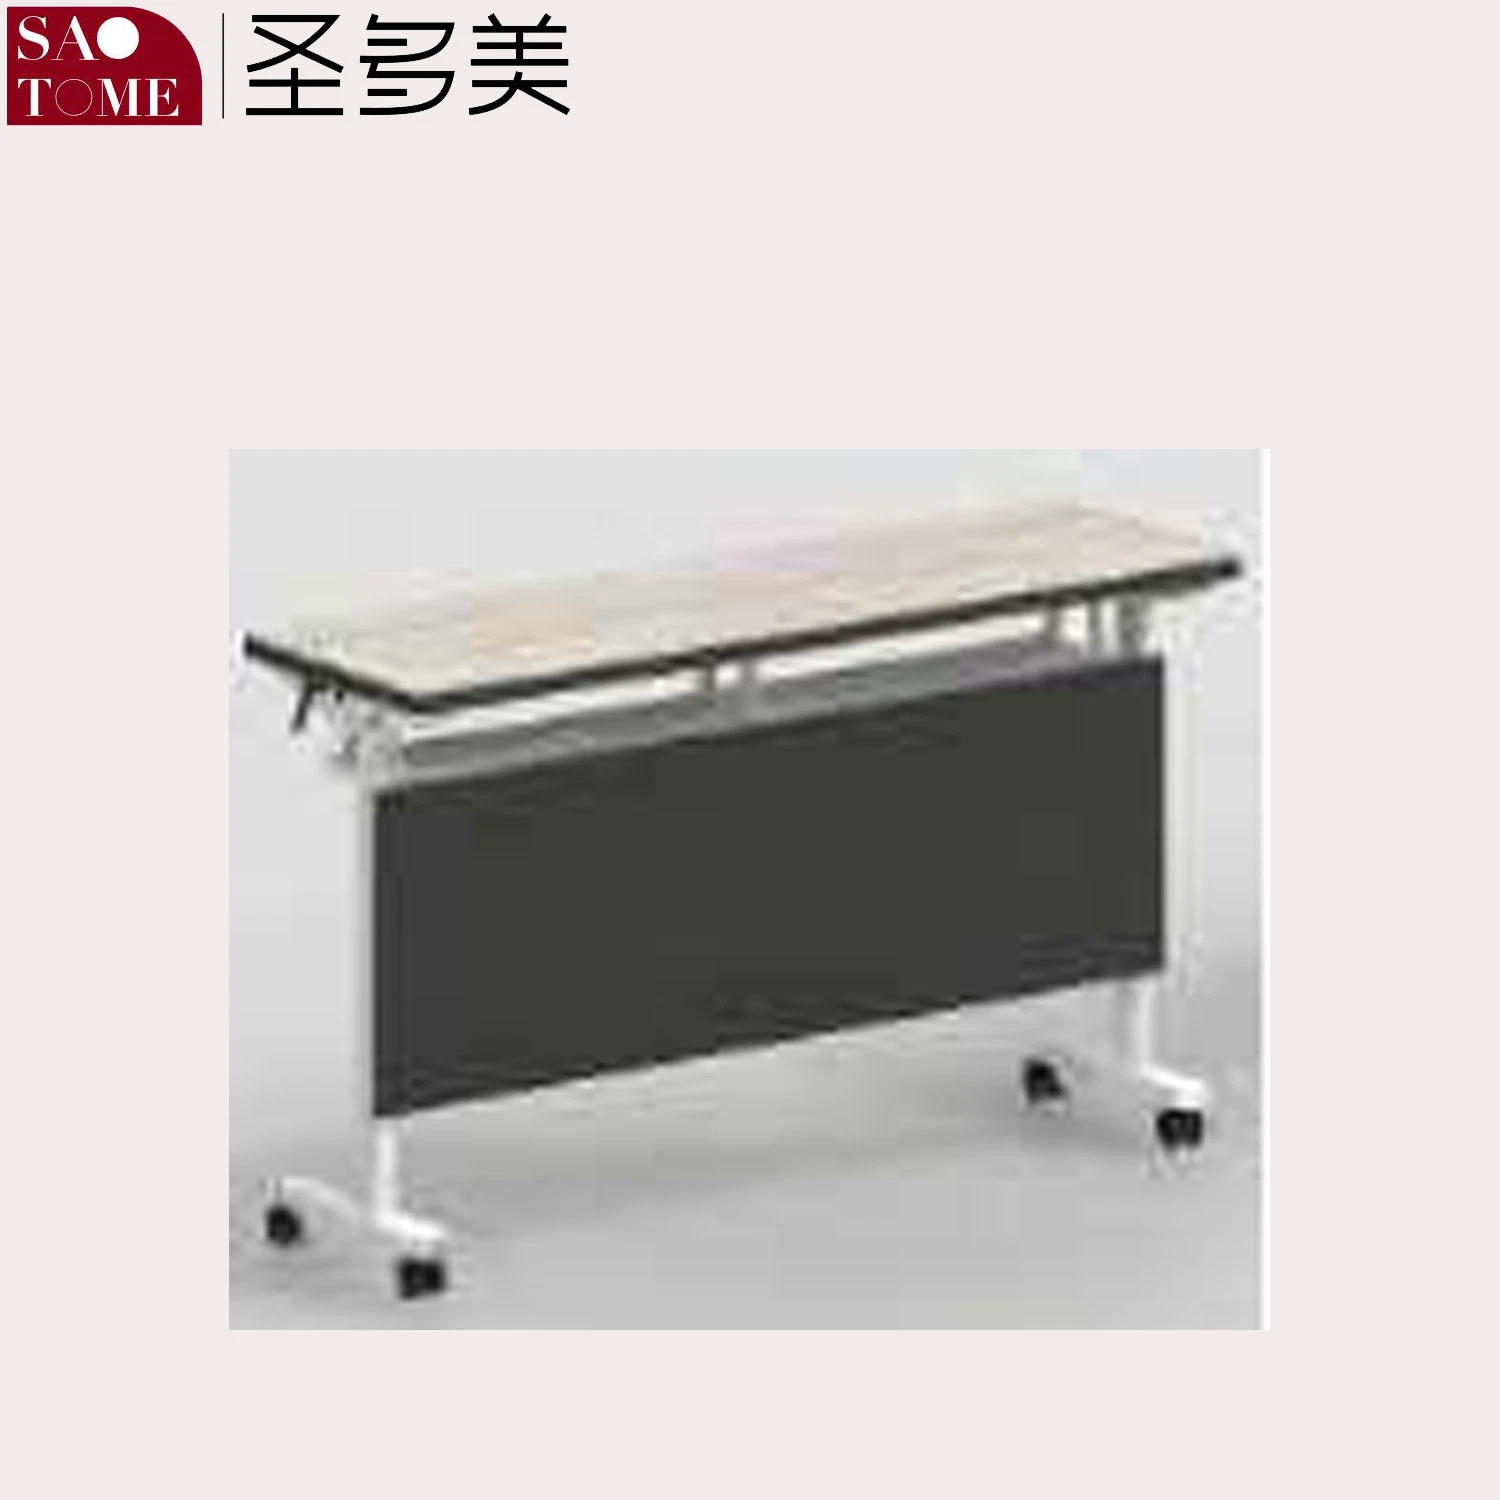 Конторской мебели письменный стол с отражательной профессиональной подготовки в таблице